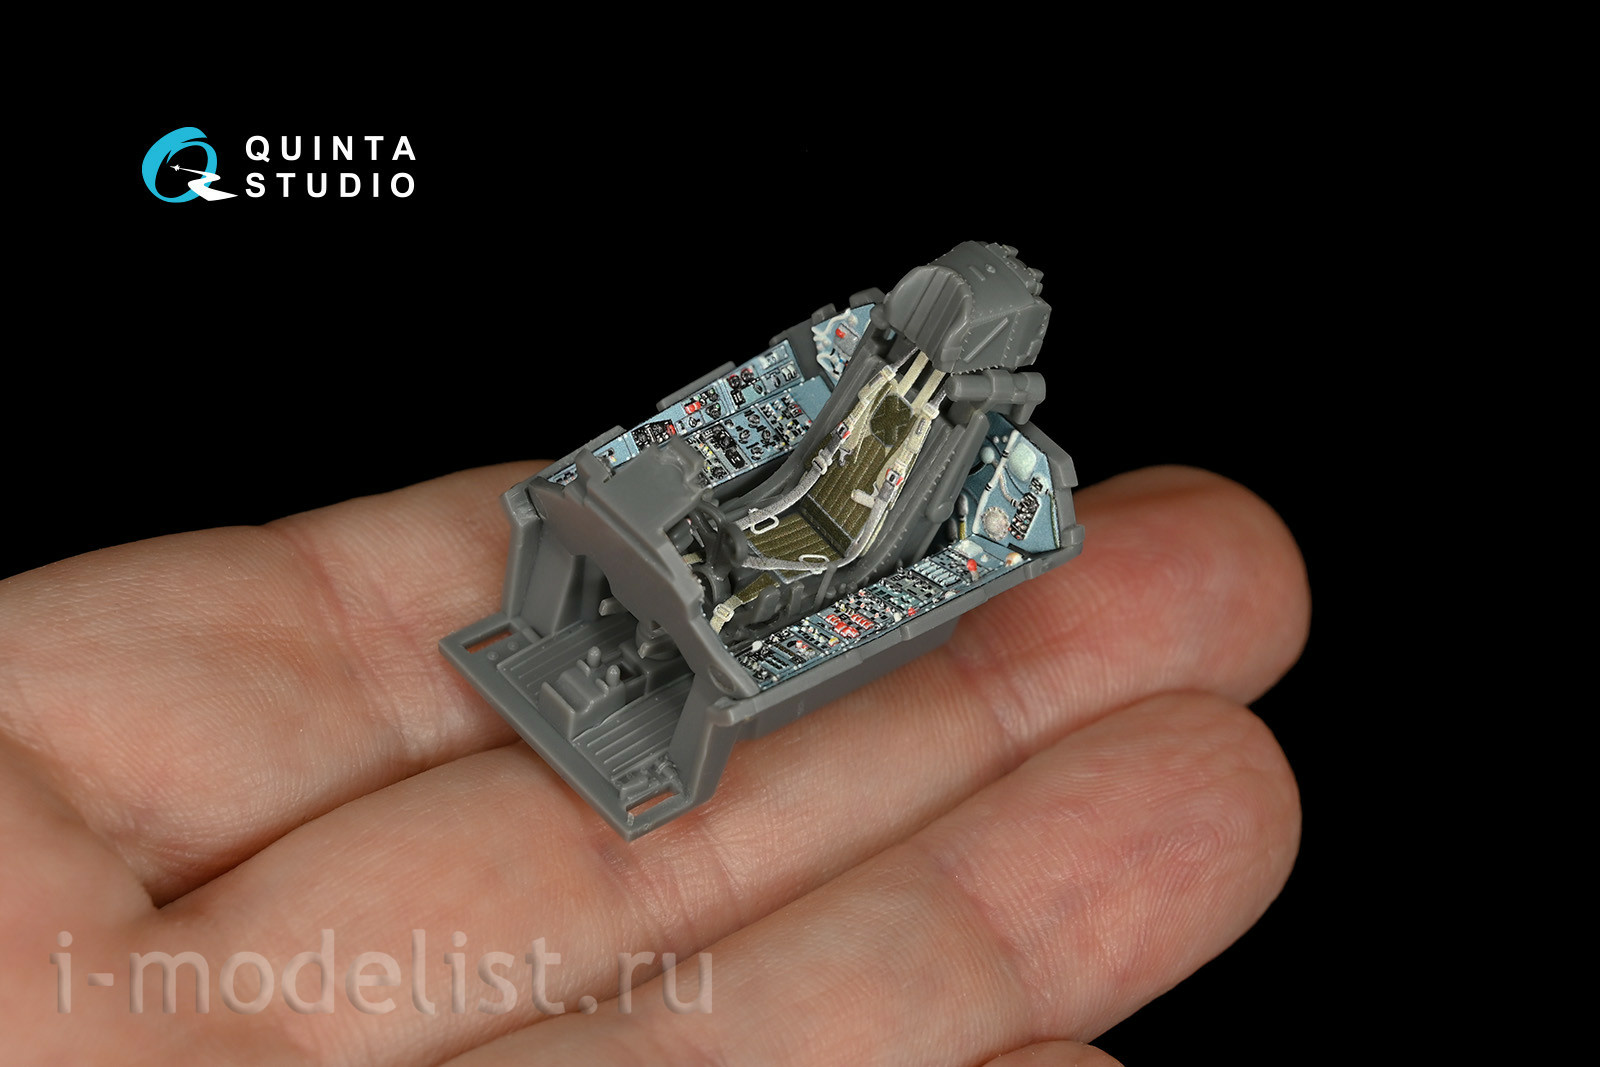 QD48148 Quinta Studio 1/48 3D Декаль интерьера кабины Суххой-27 (для модели GWH)